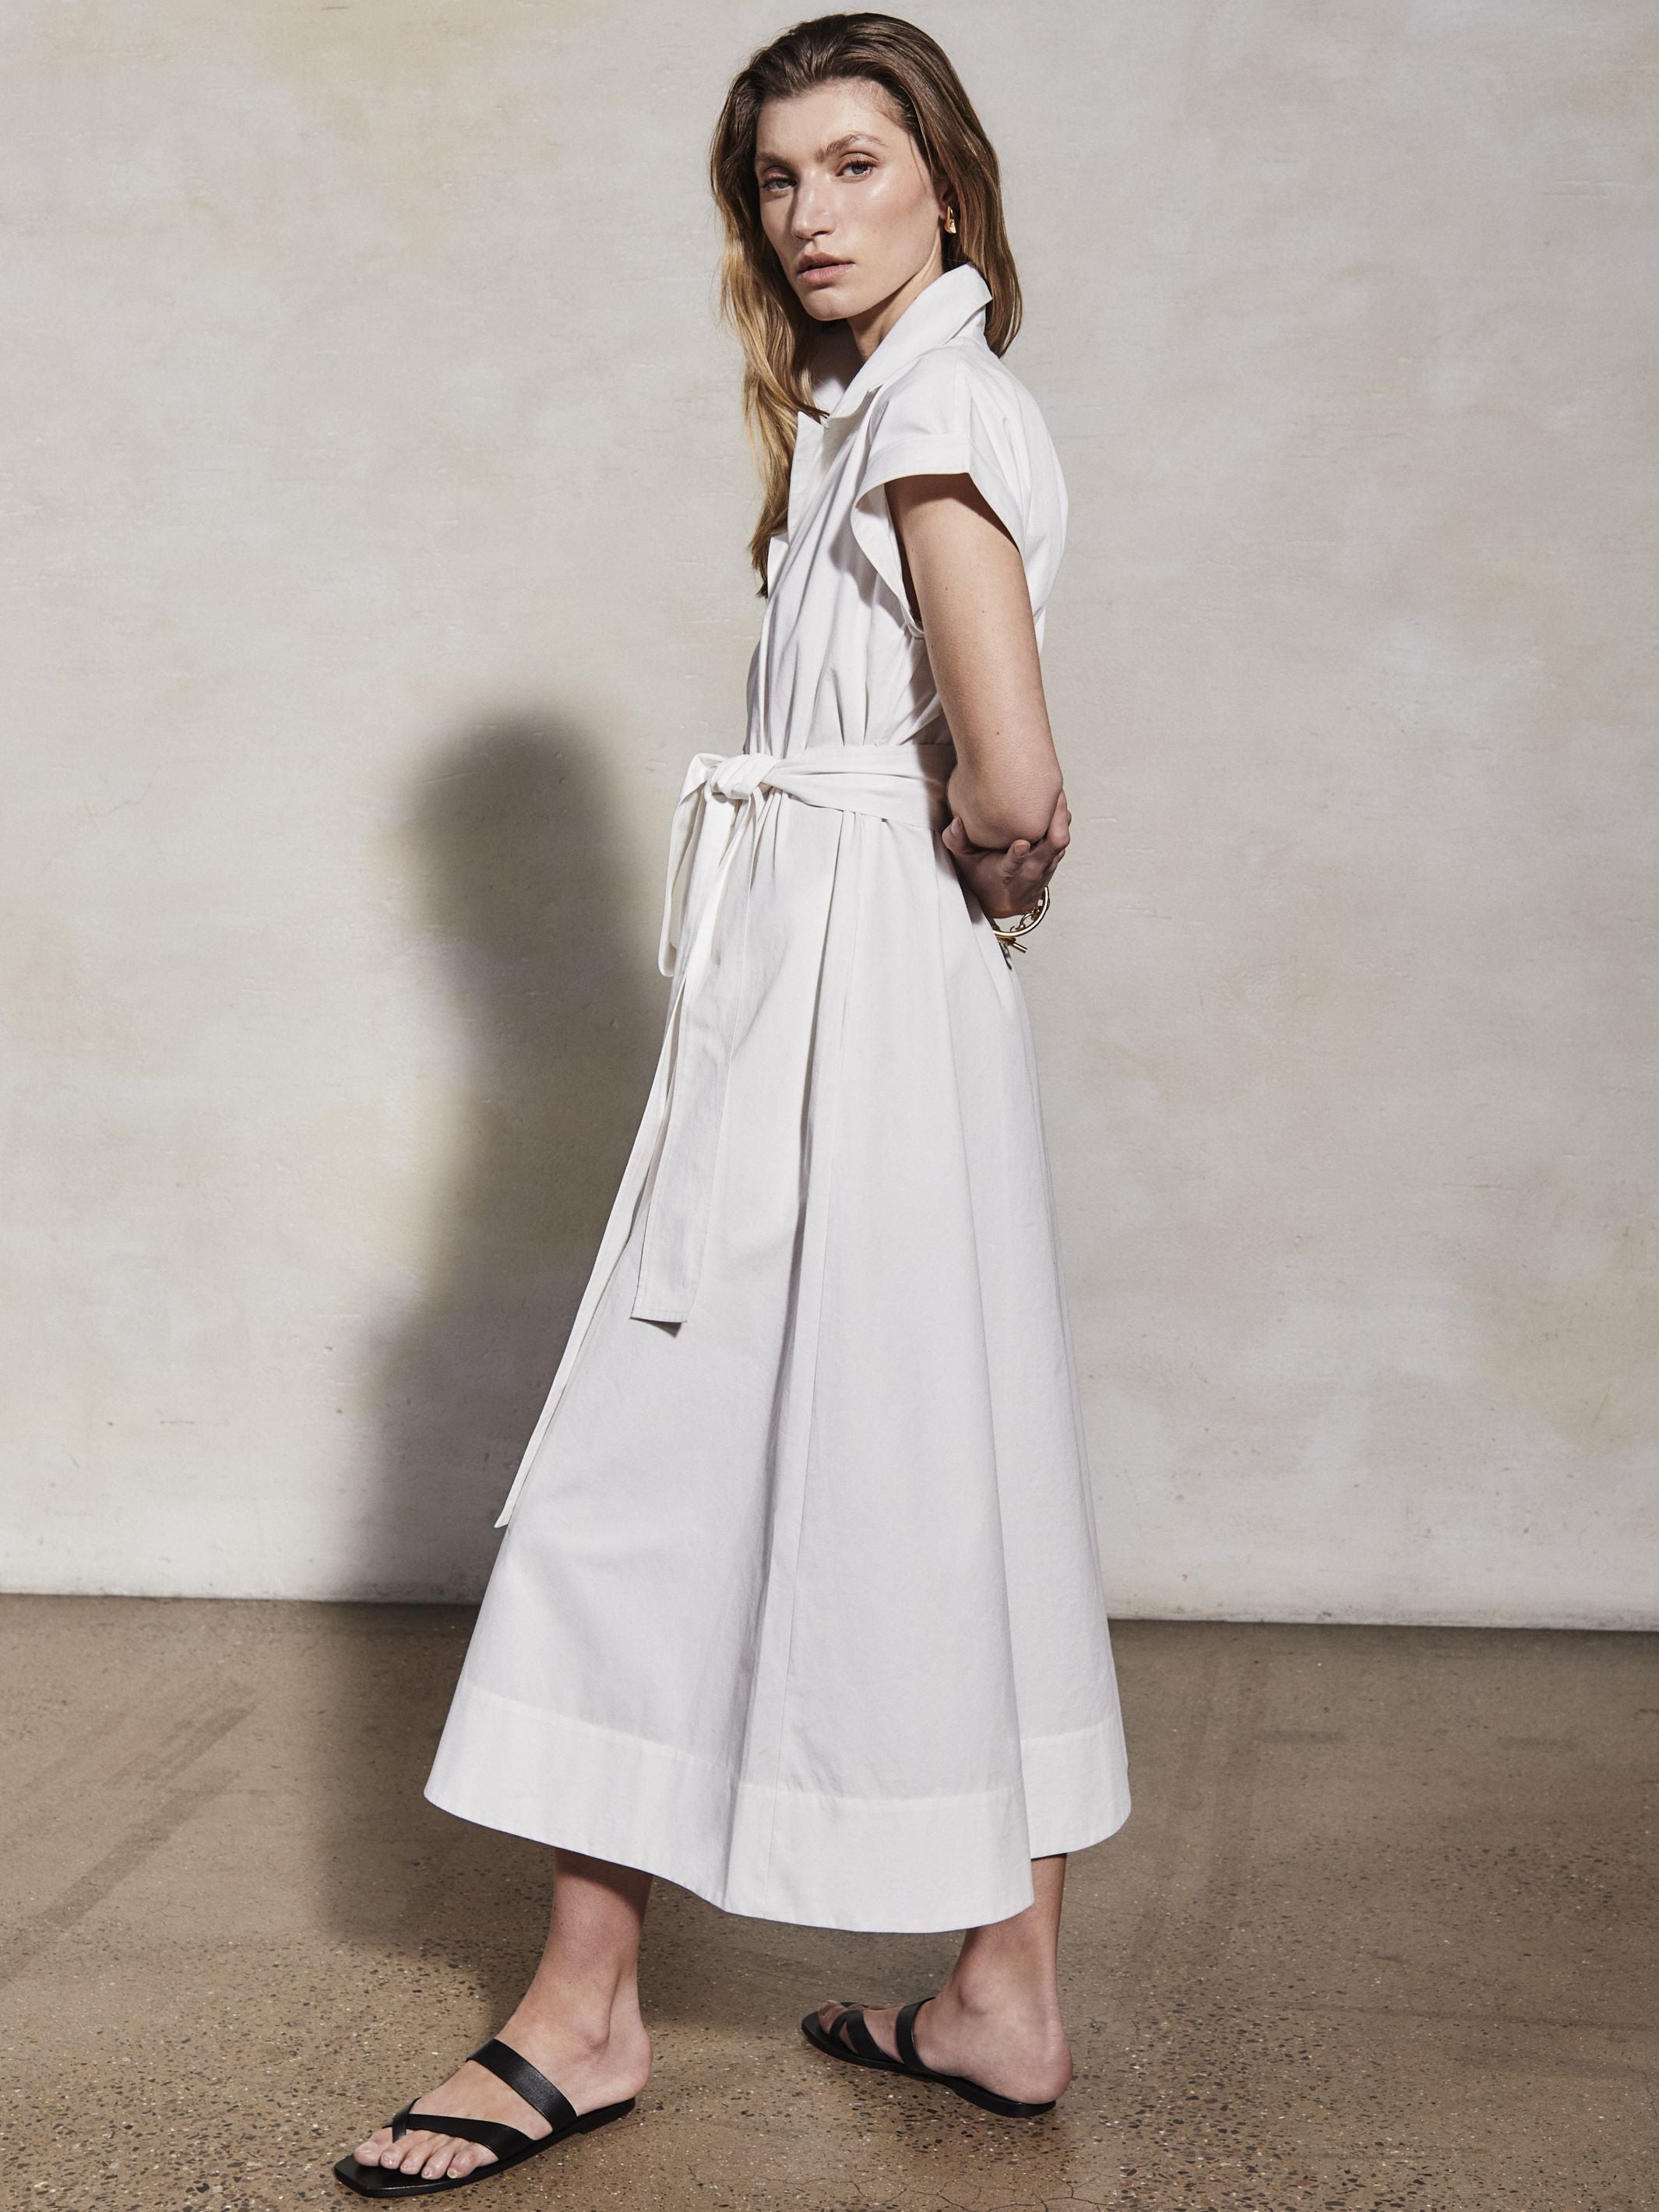 LUCY - Pearl Cotton Twill Dress - Mondo Corsini